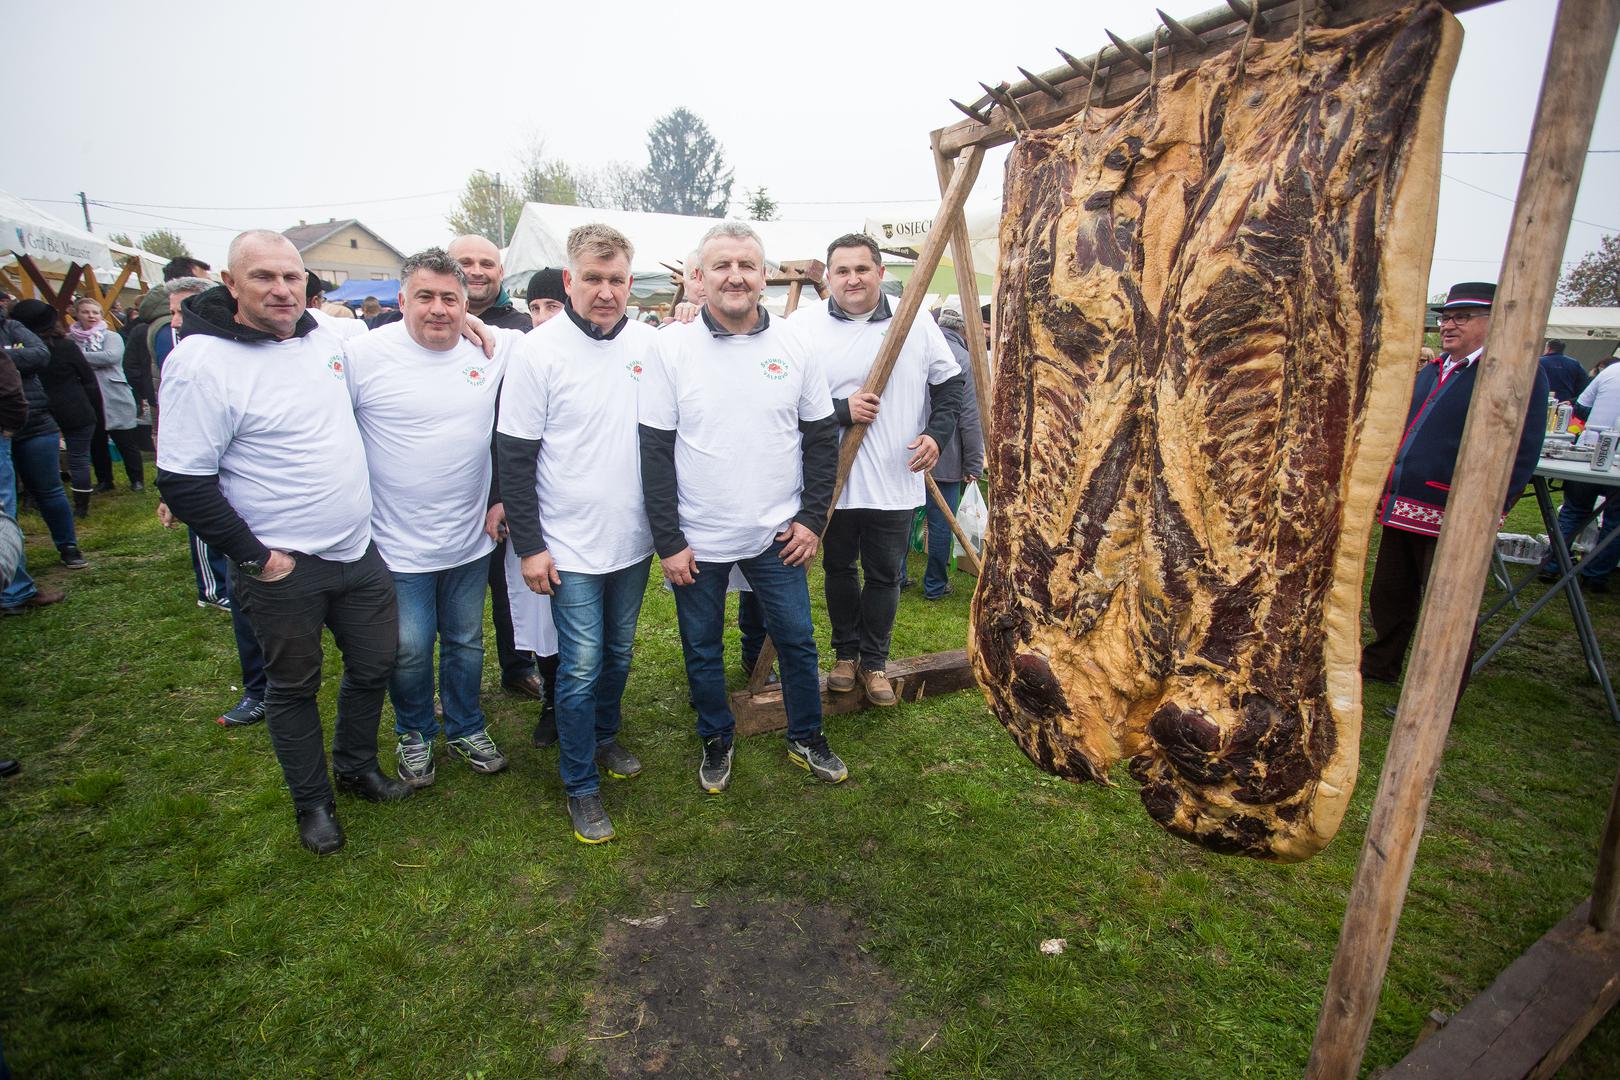 4. Najveća slanina: Novu rekordnu slaninu tešku 194 kg napravila je ekipa od četiri prijatelja iz Valpova u Slavoniji. Slanina je predstavljena na proljetnom festivalu u Karancu u travnju 2019. godine na ‘Proljetnom vašaru’ u Karancu. Prema Guinnessovoj knjizi rekorda, prijašnja najveća slanina na svijetu prije je bila teška 150,5 kg, a napravljena je u Italiji i predstavljena na gradskom festivalu Starih Spasova 2002. godine.